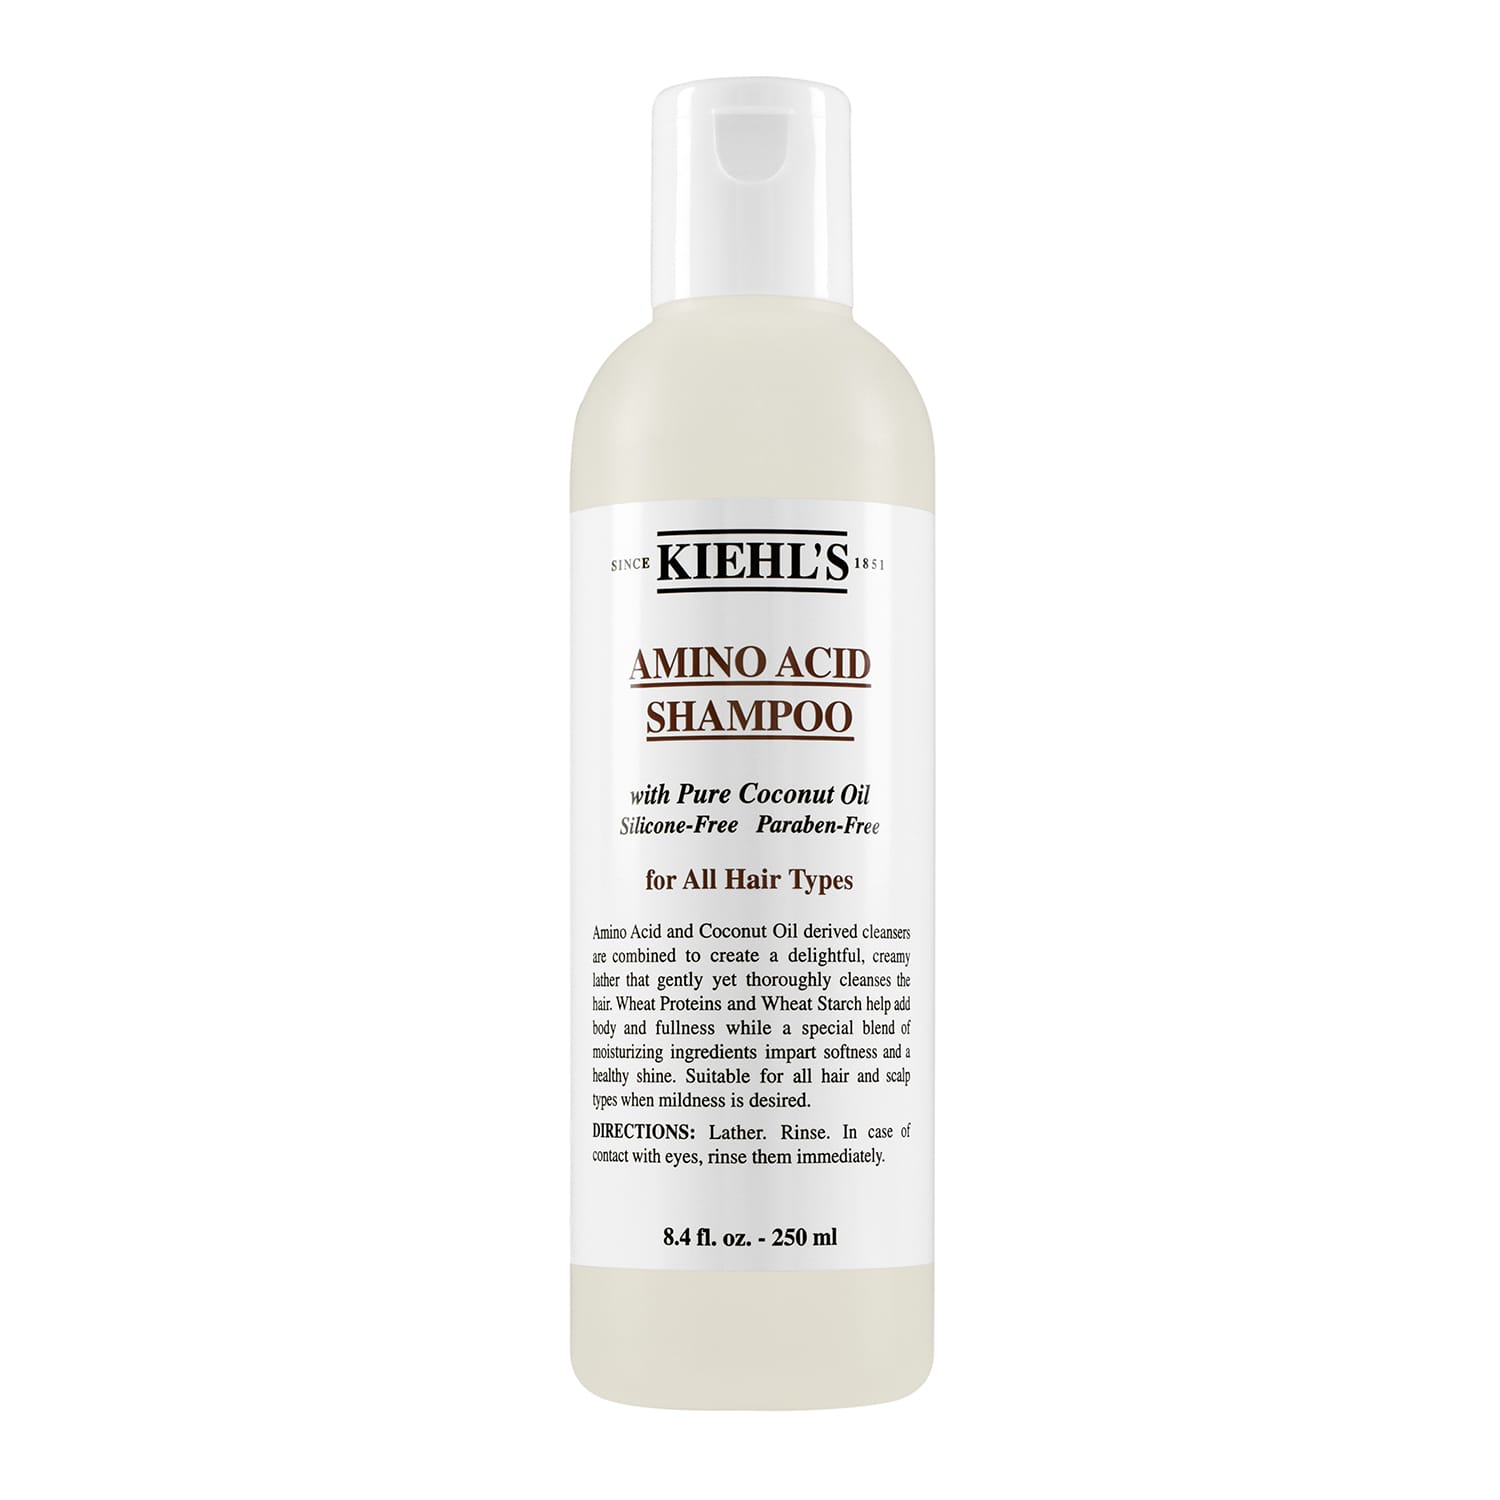 Amino acid shampoo 250ml